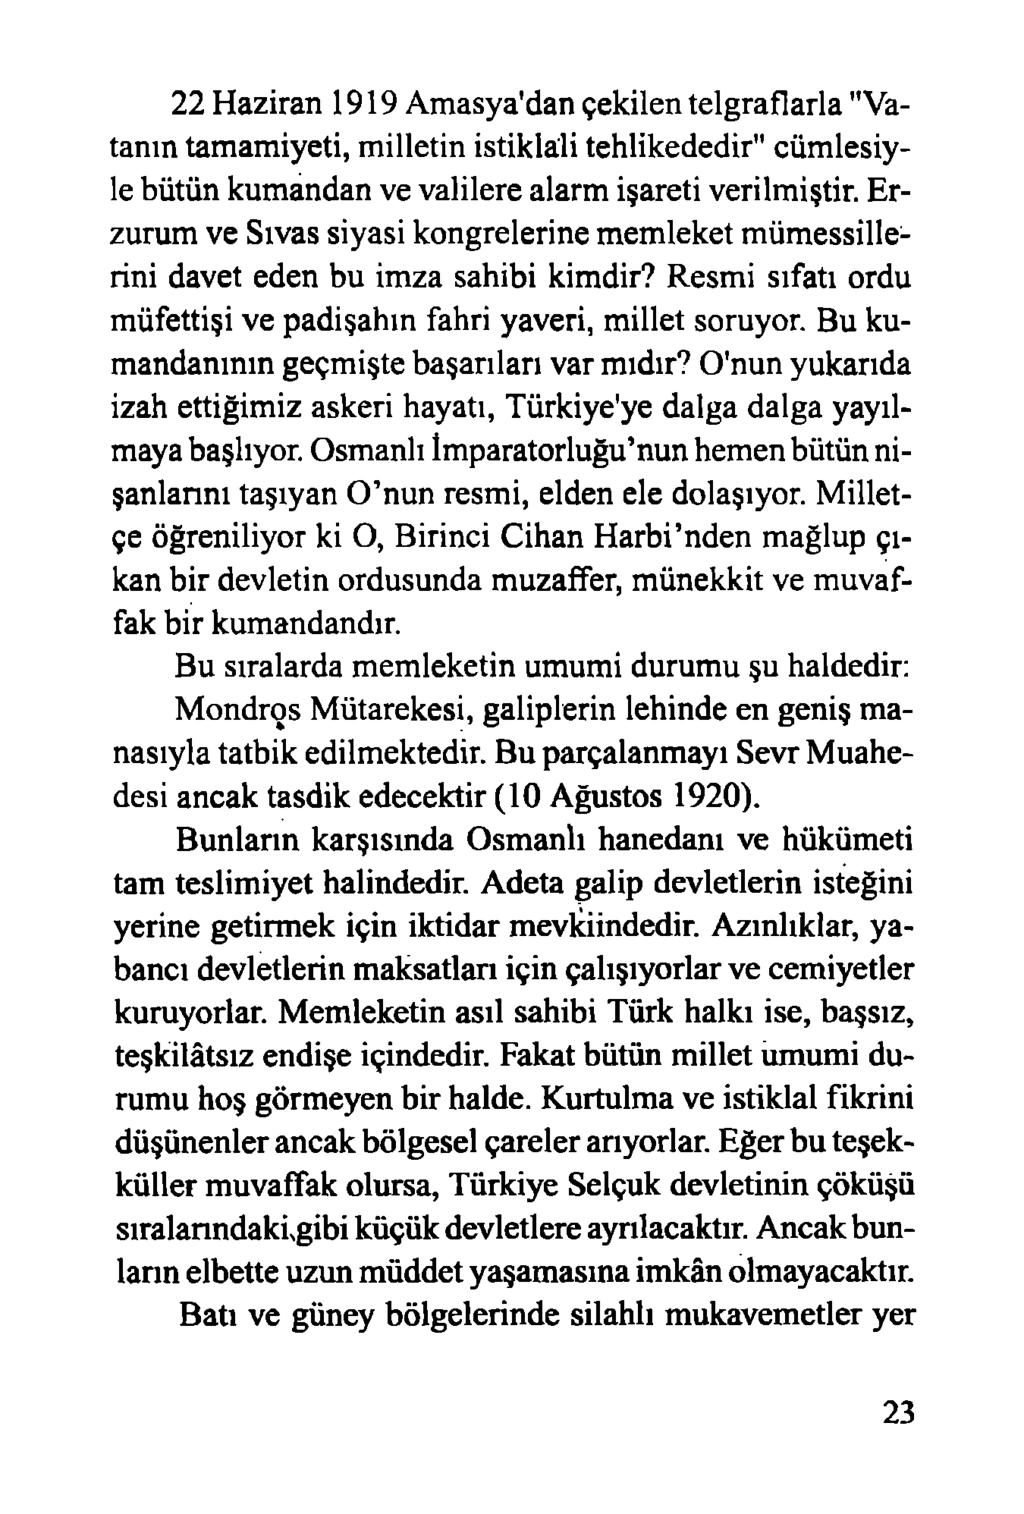 22 Haziran 1919 Amasya'dan çekilen telgraflarla "Vatanın tamamiyeti, milletin istiklali tehlikededir" cümlesiyle bütün kumandan ve valilere alarm işareti verilmiştir.